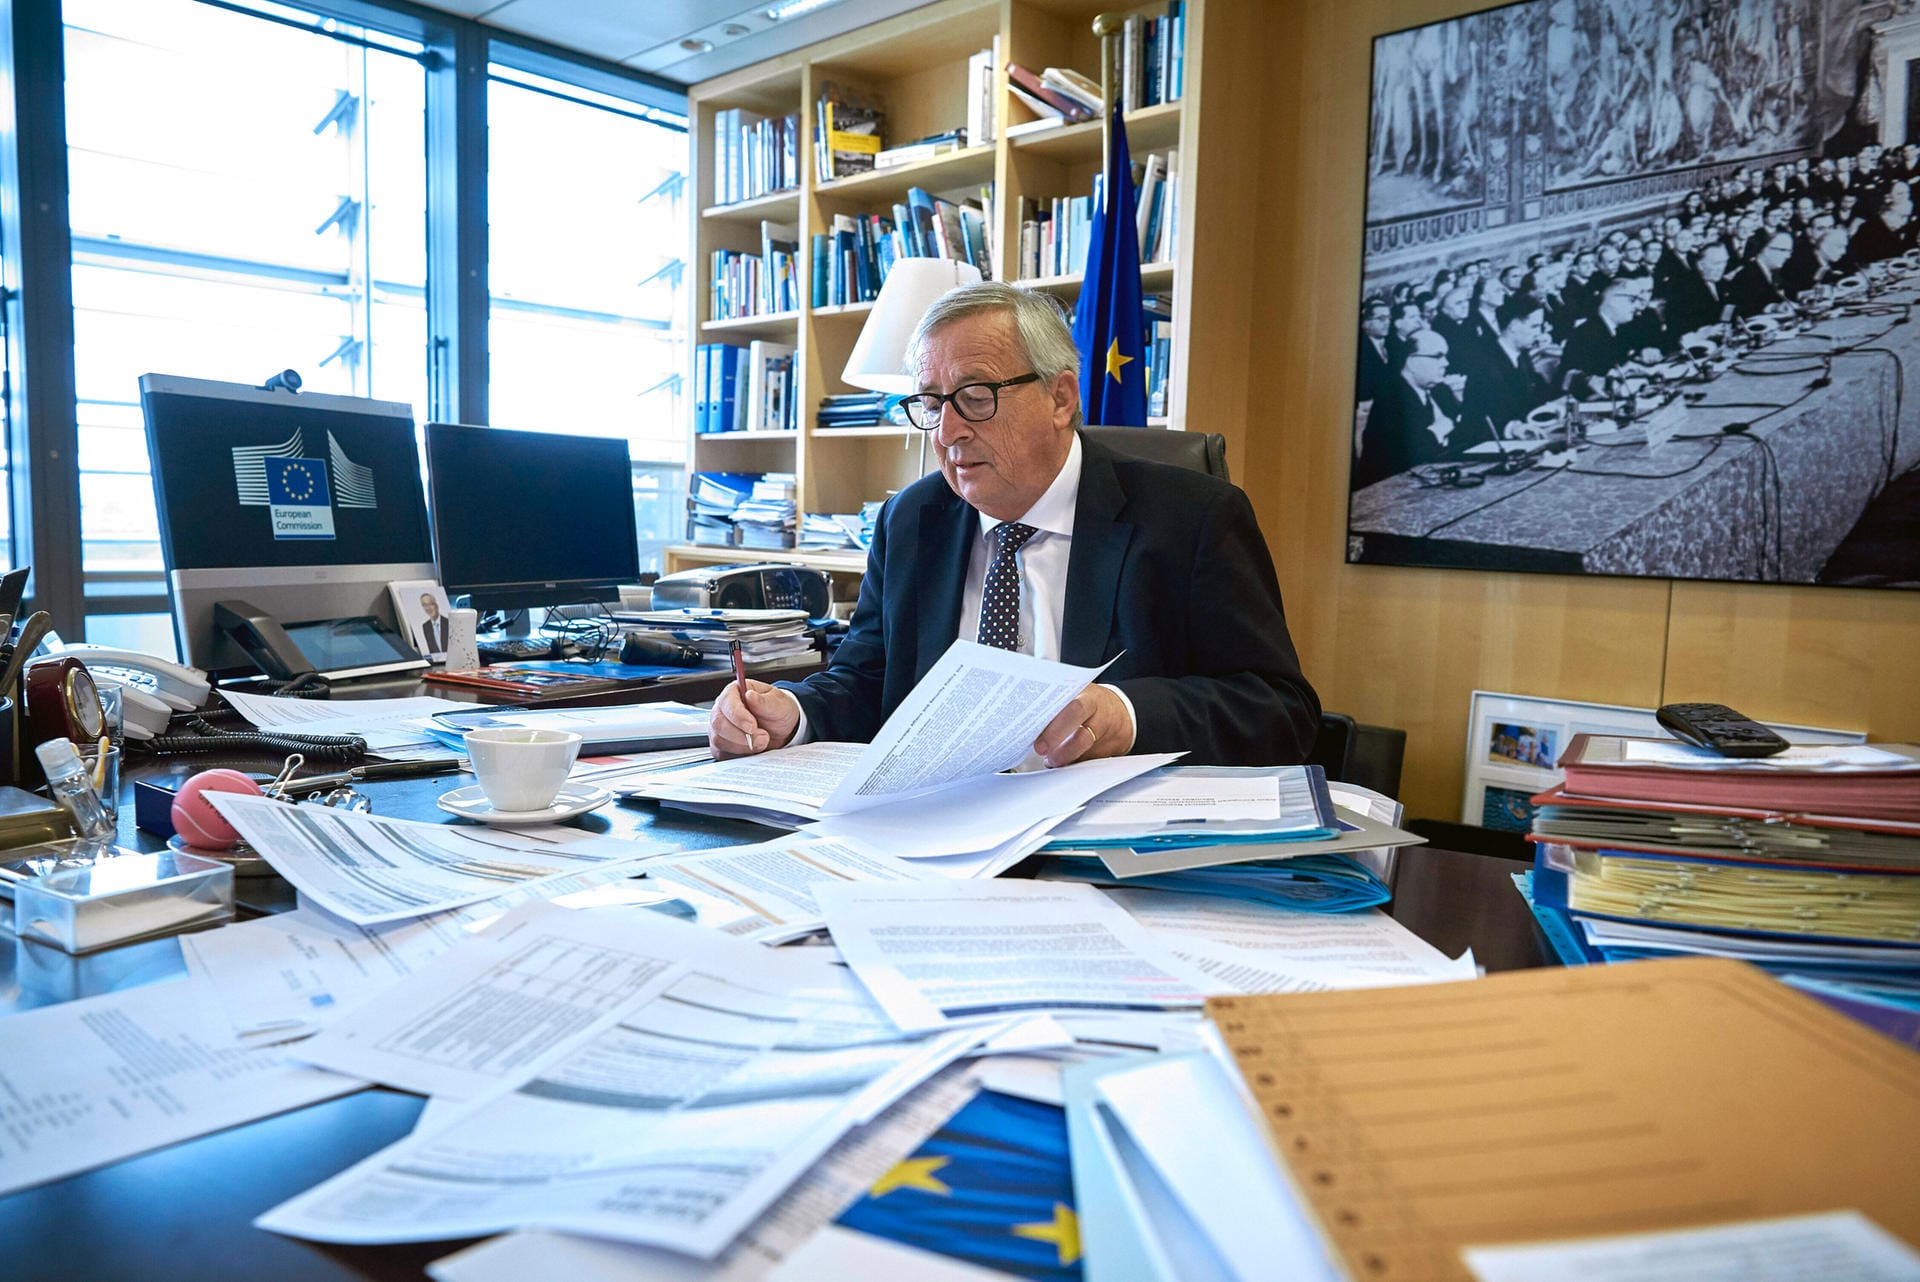 Der Europäer: 2014 wurde Juncker dann Chef der Europäischen Kommission. Dabei machte er nicht nur als leidenschaftlicher Europäer auf sich aufmerksam, sondern auch mit allerhand Klamauk. Seine Art der Politik machte ihn zu einem Menschenfänger, mit dem er sogar US-Präsident Donald Trump besänftigte.